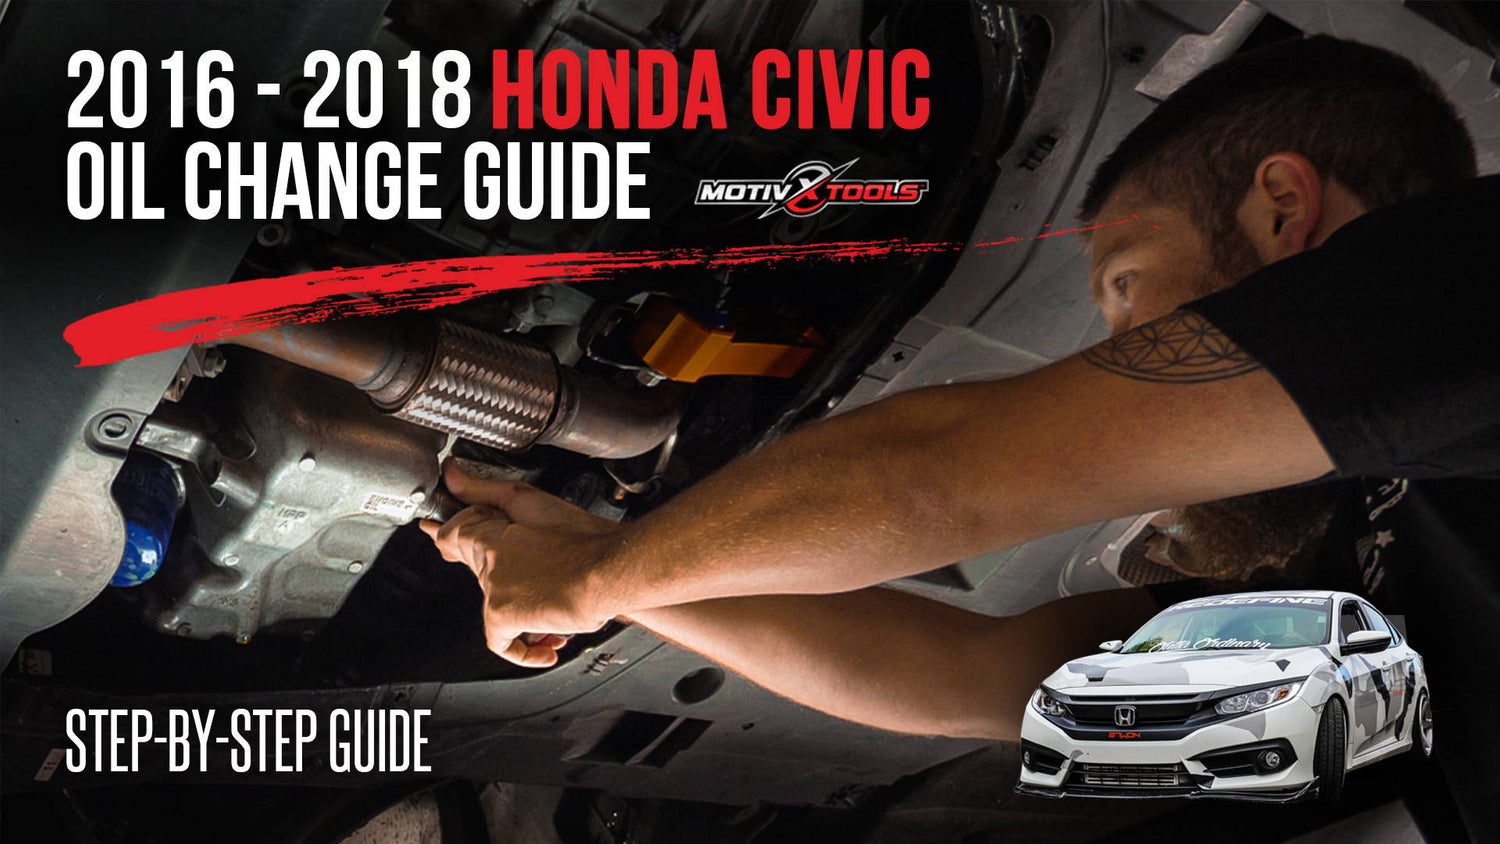 How to Open Honda Civic Hood